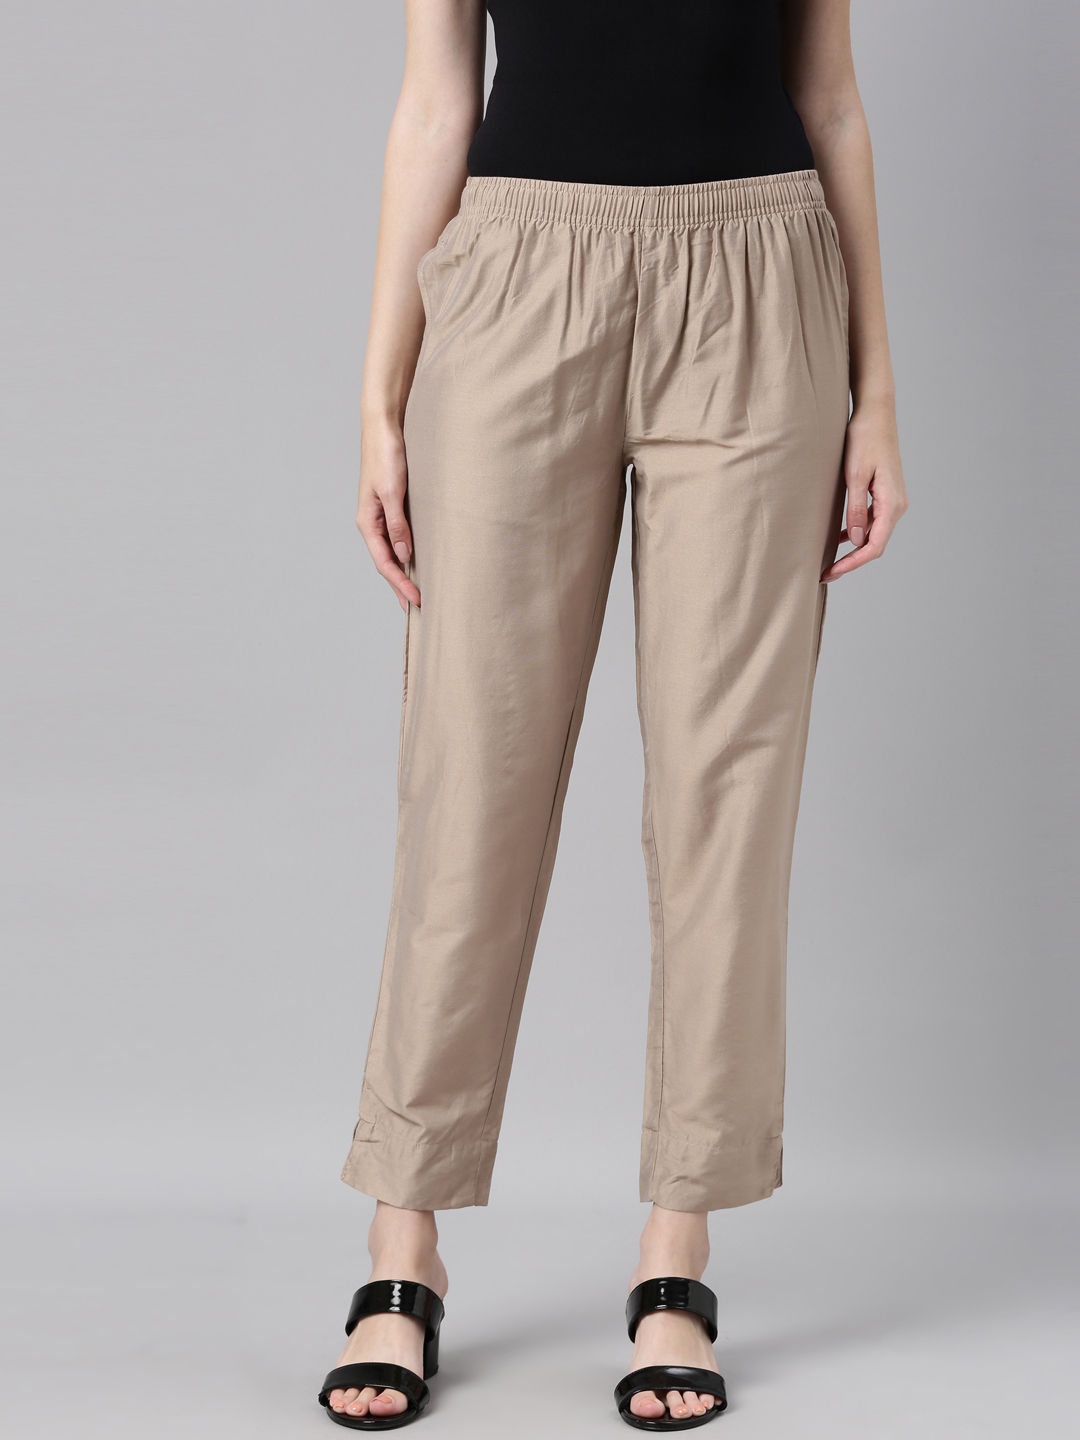 Buy Women's Cotton Lycra Semi-Formal Wear Slim Fit Pants|Cottonworld